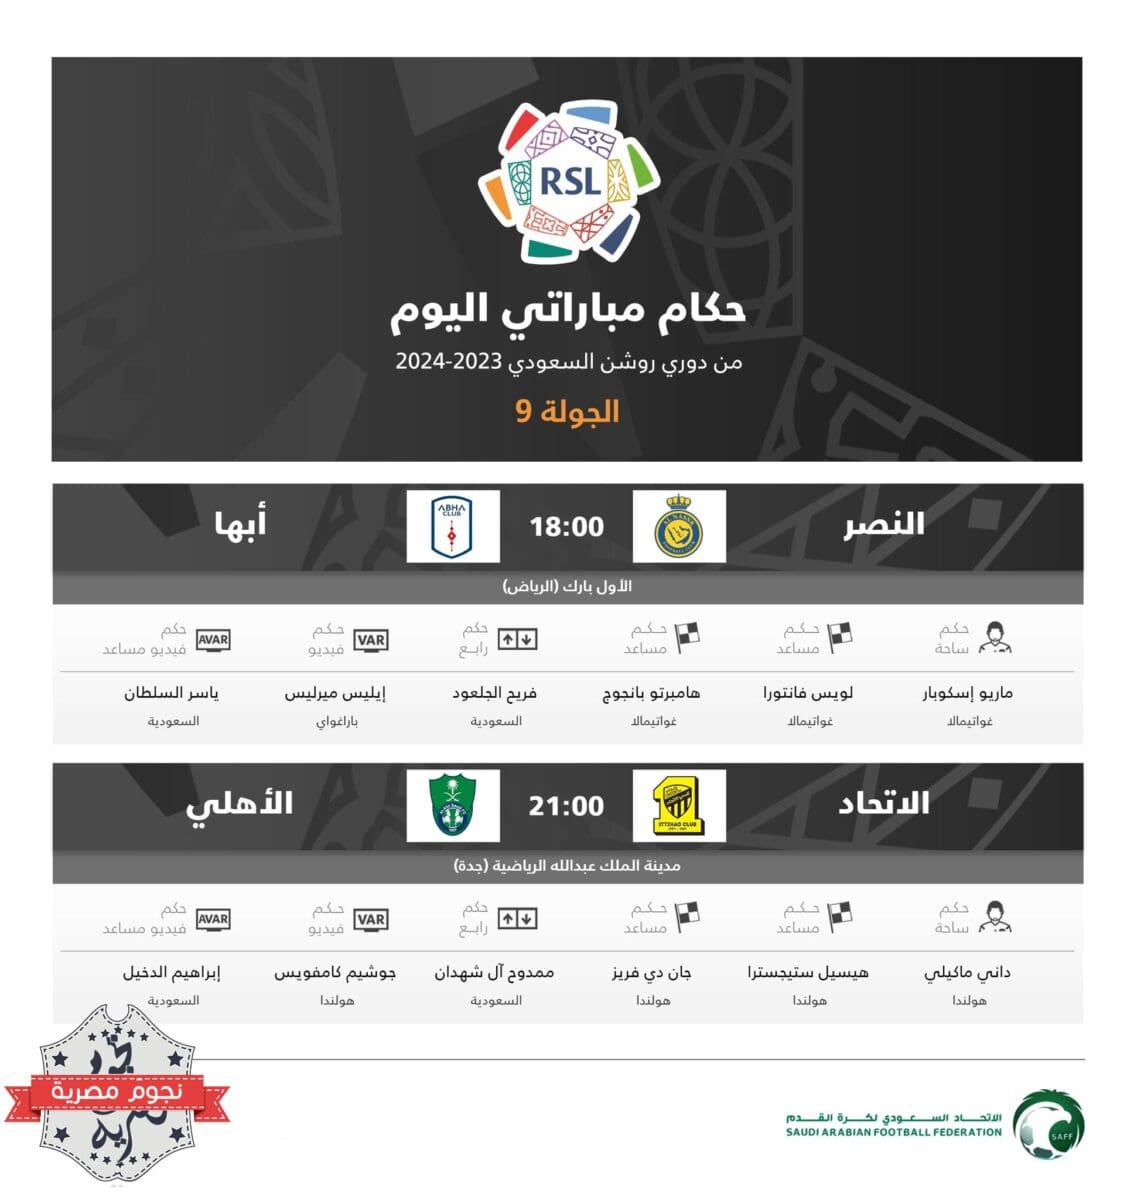 حكام مباريات اليوم الثاني (الجمعة) في الجولة 9 من دوري روشن السعودي للمحترفين (المصدر. حساب اتحاد الكرة تويتر)